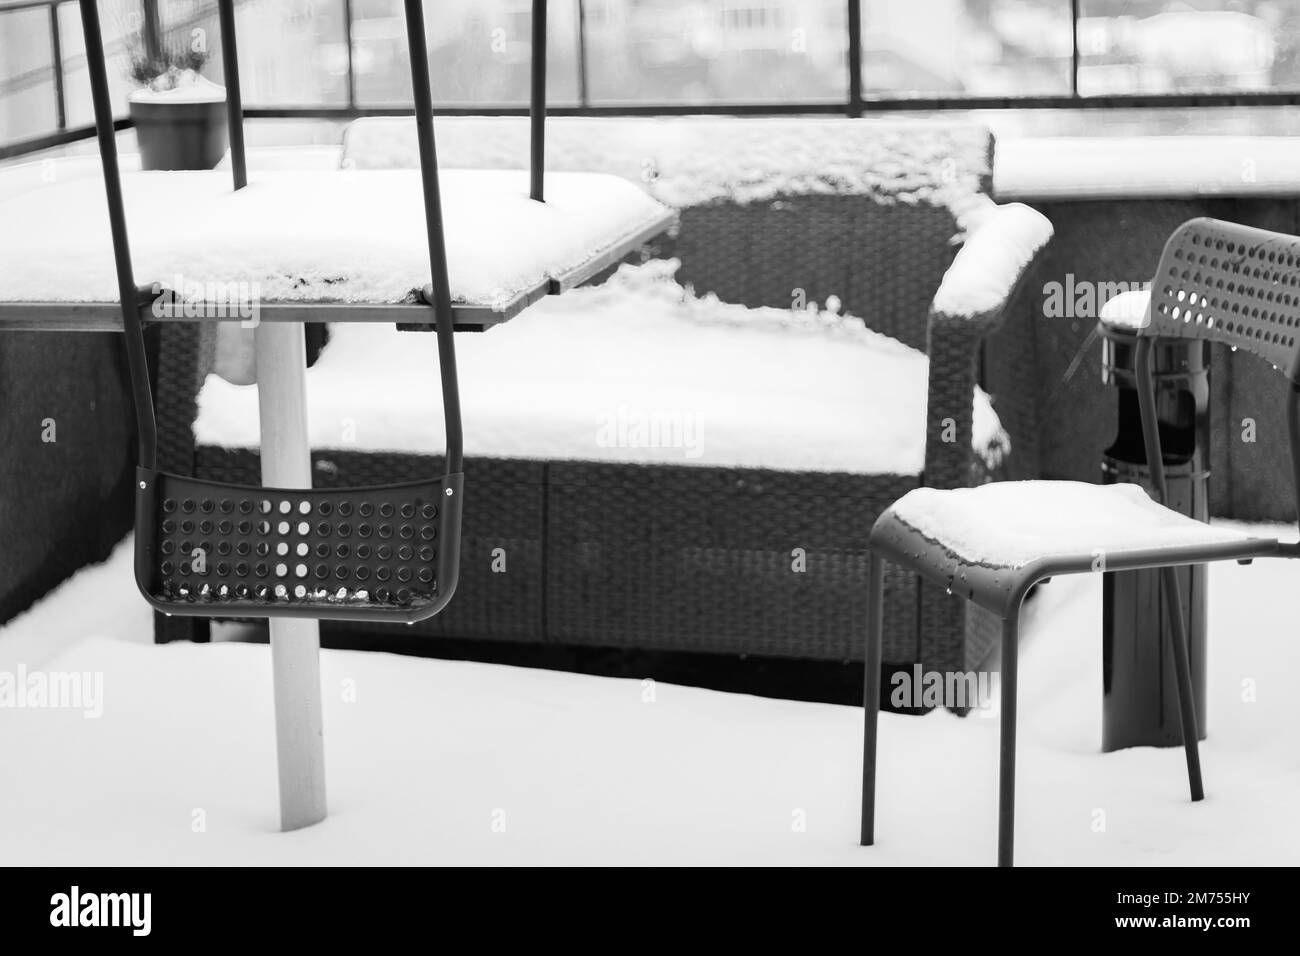 Schneebedeckte Gartenmöbel in Schwarz und Weiß. Schneebedeckte Stühle und Sofa auf dem Balkon. Winter in der Stadt. Stadt bedeckt mit frischem Schnee. Stockfoto